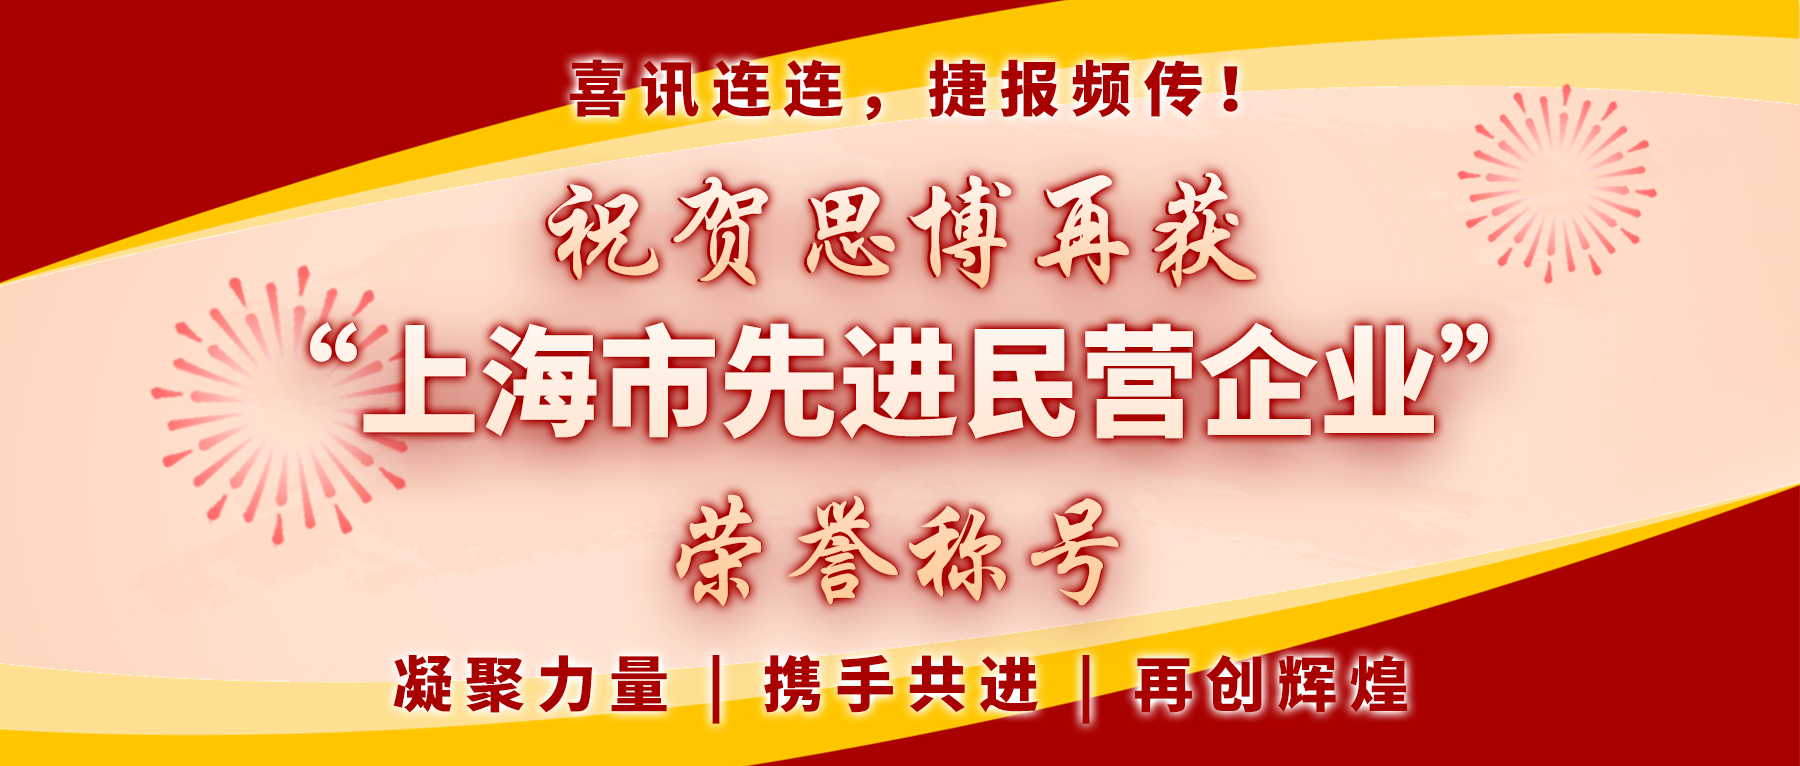 【喜讯连连，捷报频传】祝贺思博再获“上海市先进民营企业”荣誉称号！